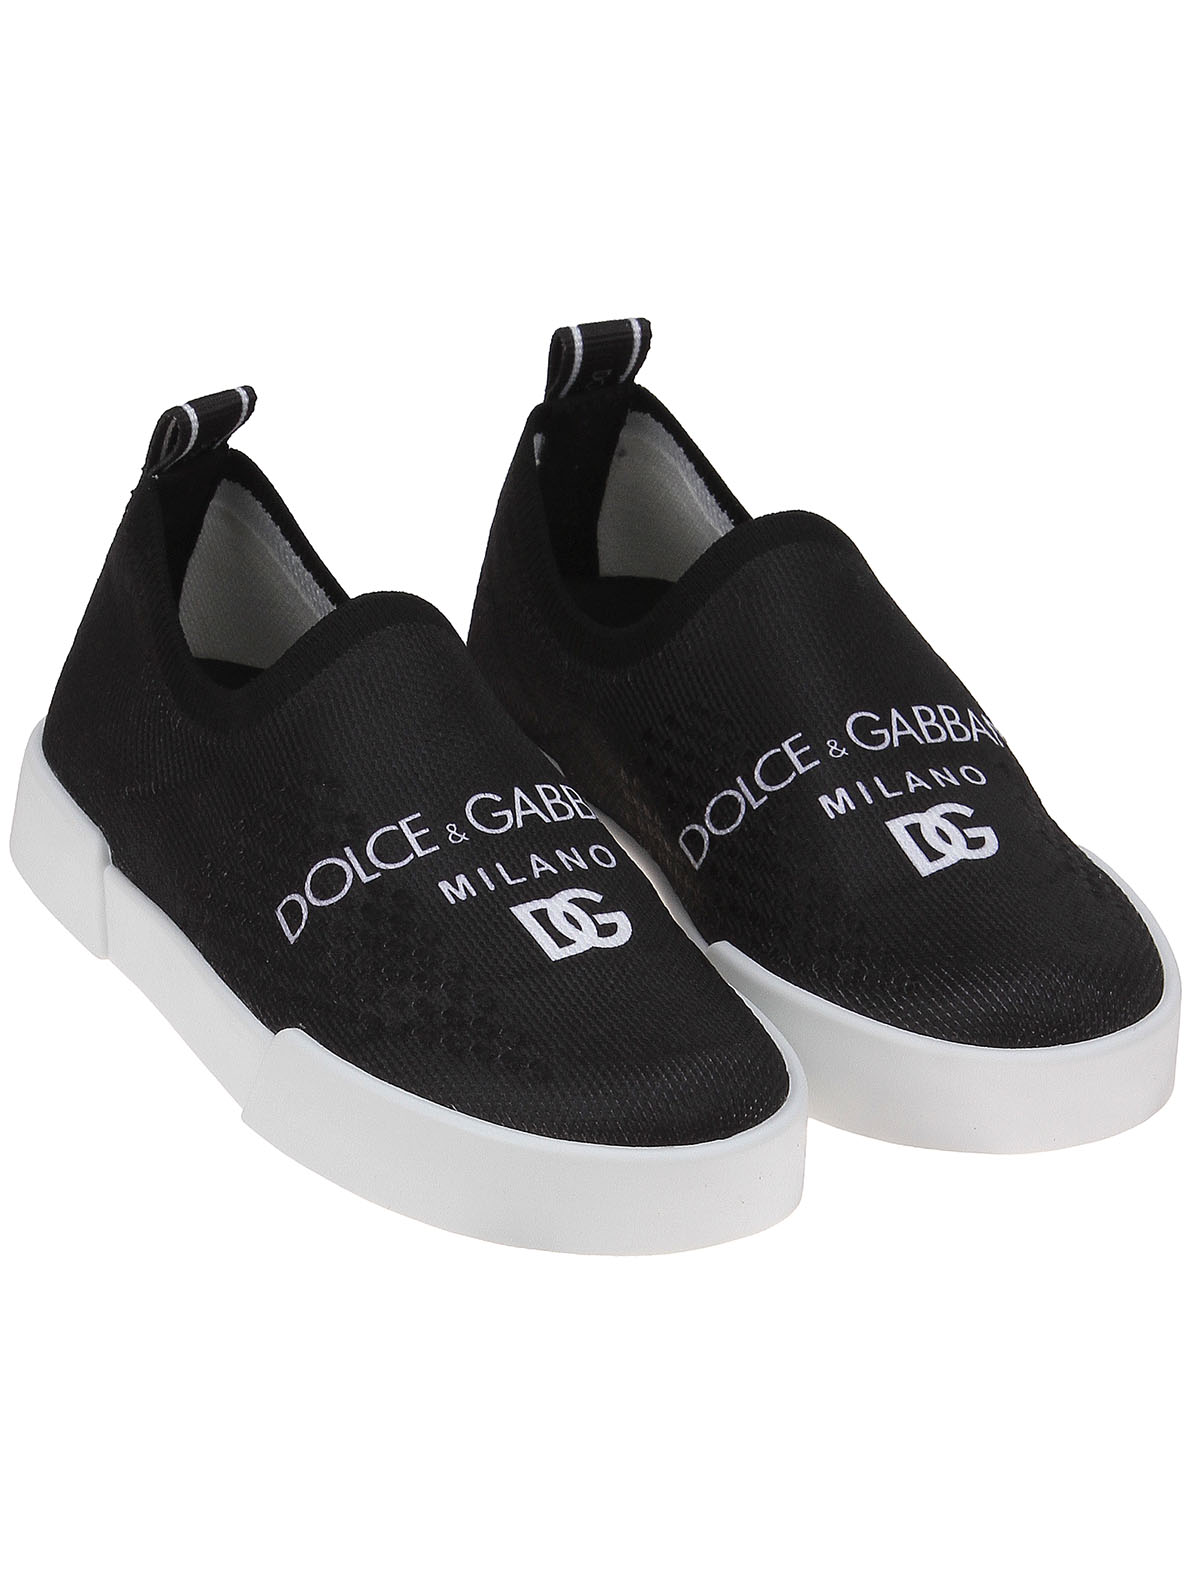 Слипоны Dolce & Gabbana 2489020, цвет черный, размер 35